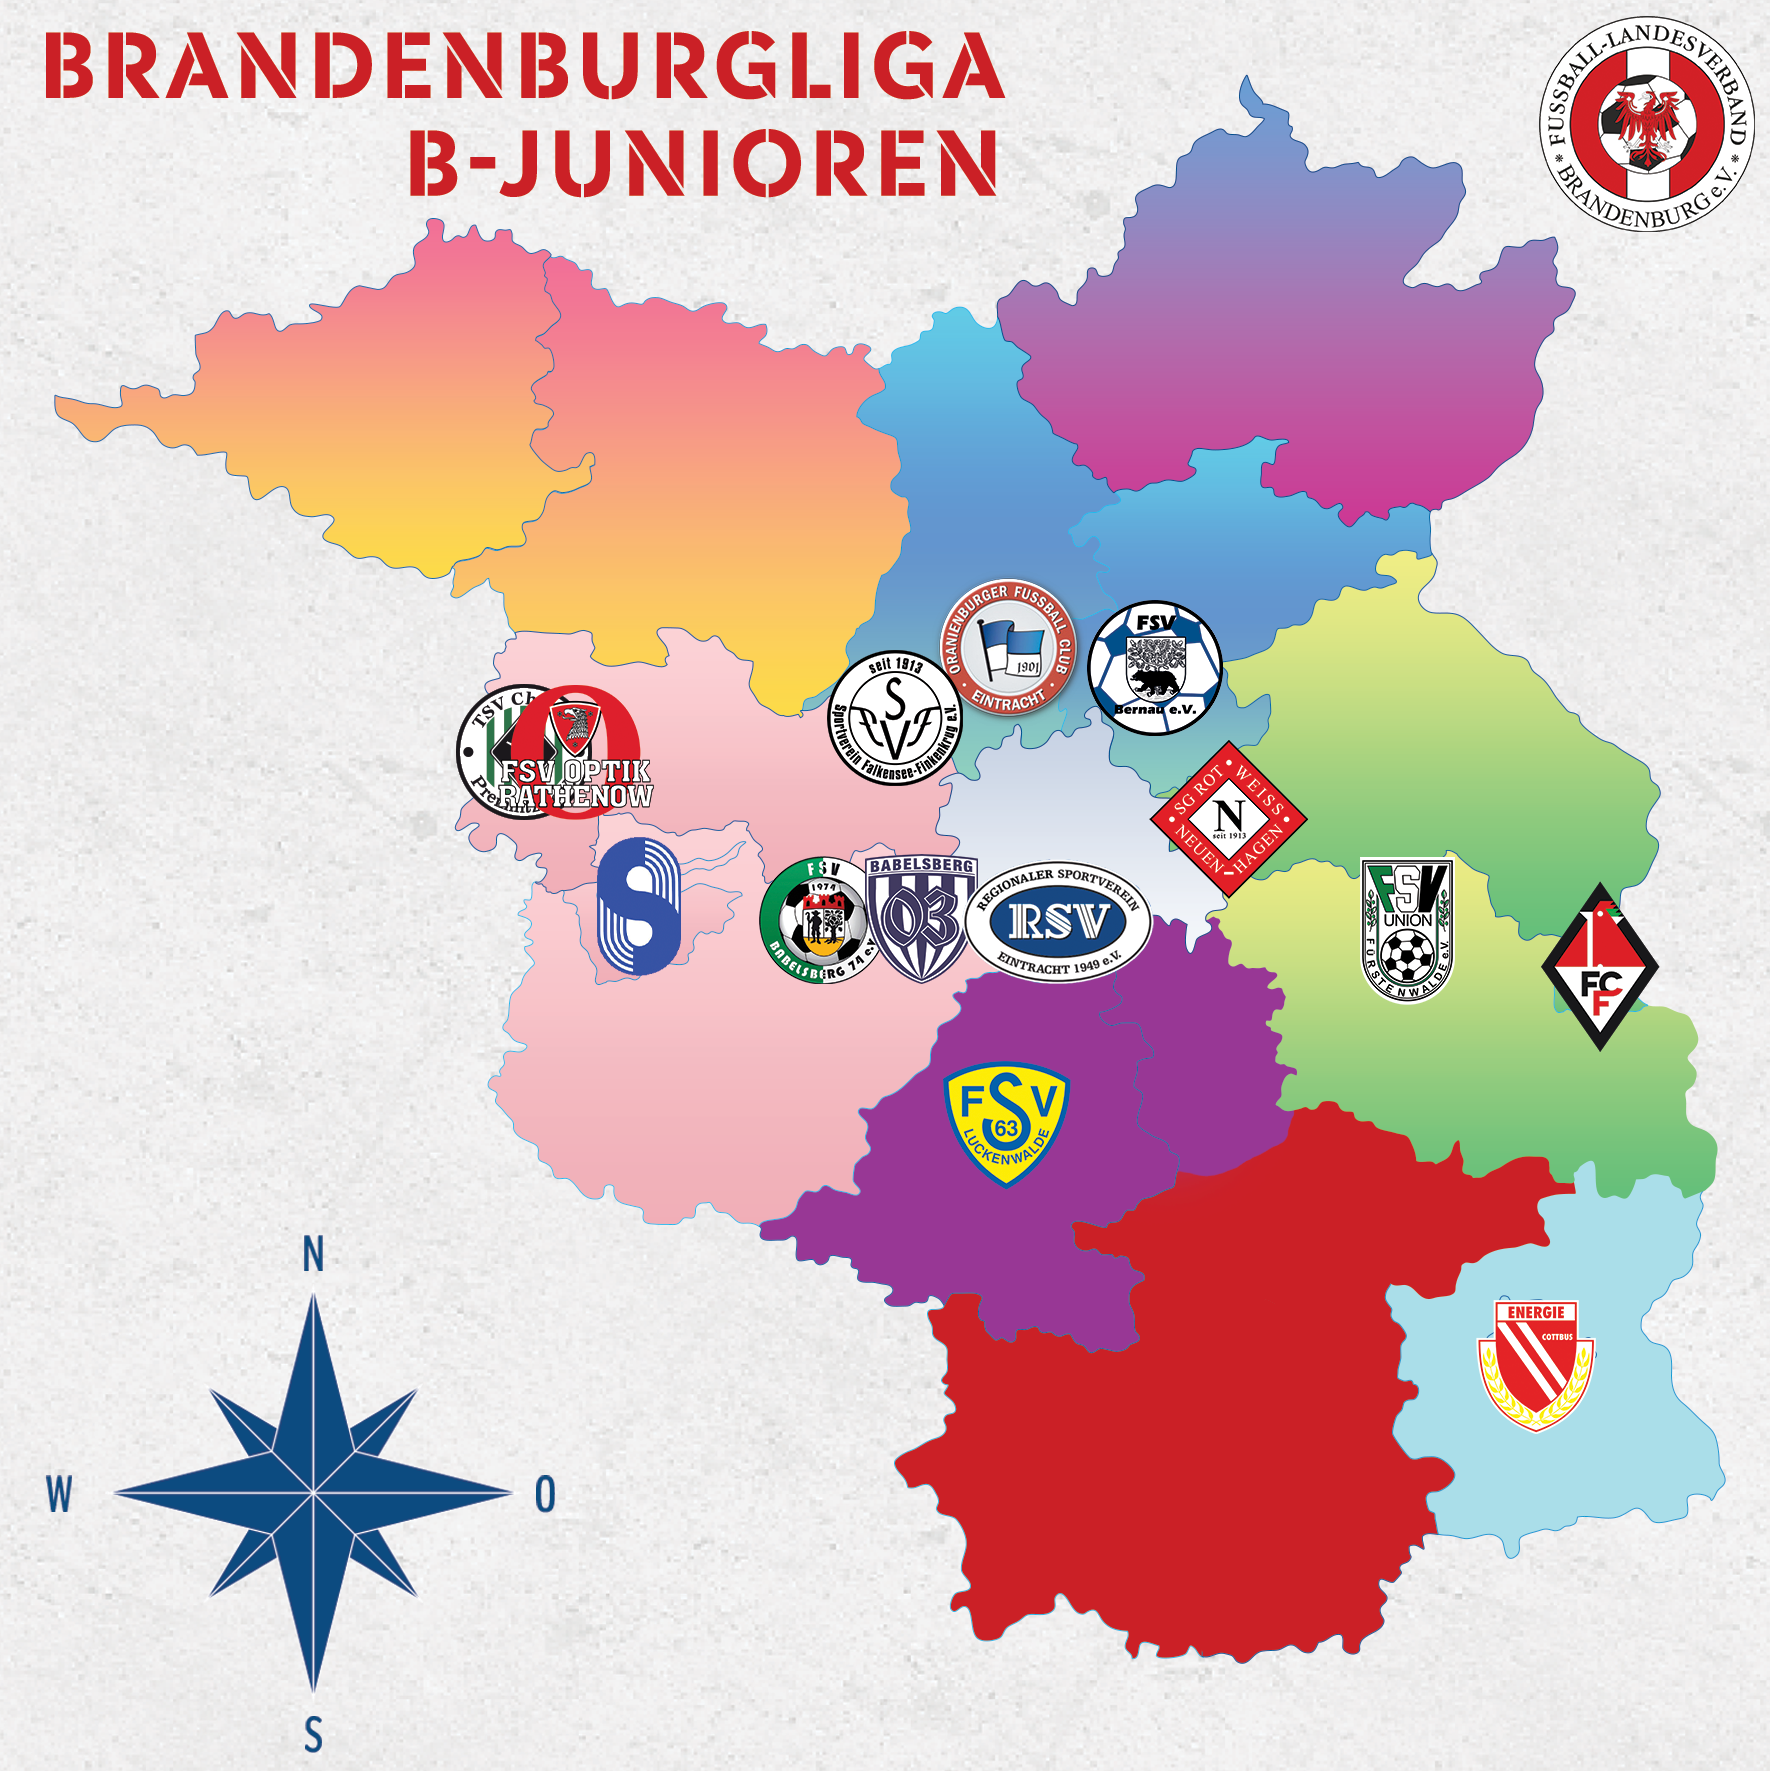 Brandenburgliga B-Junioren